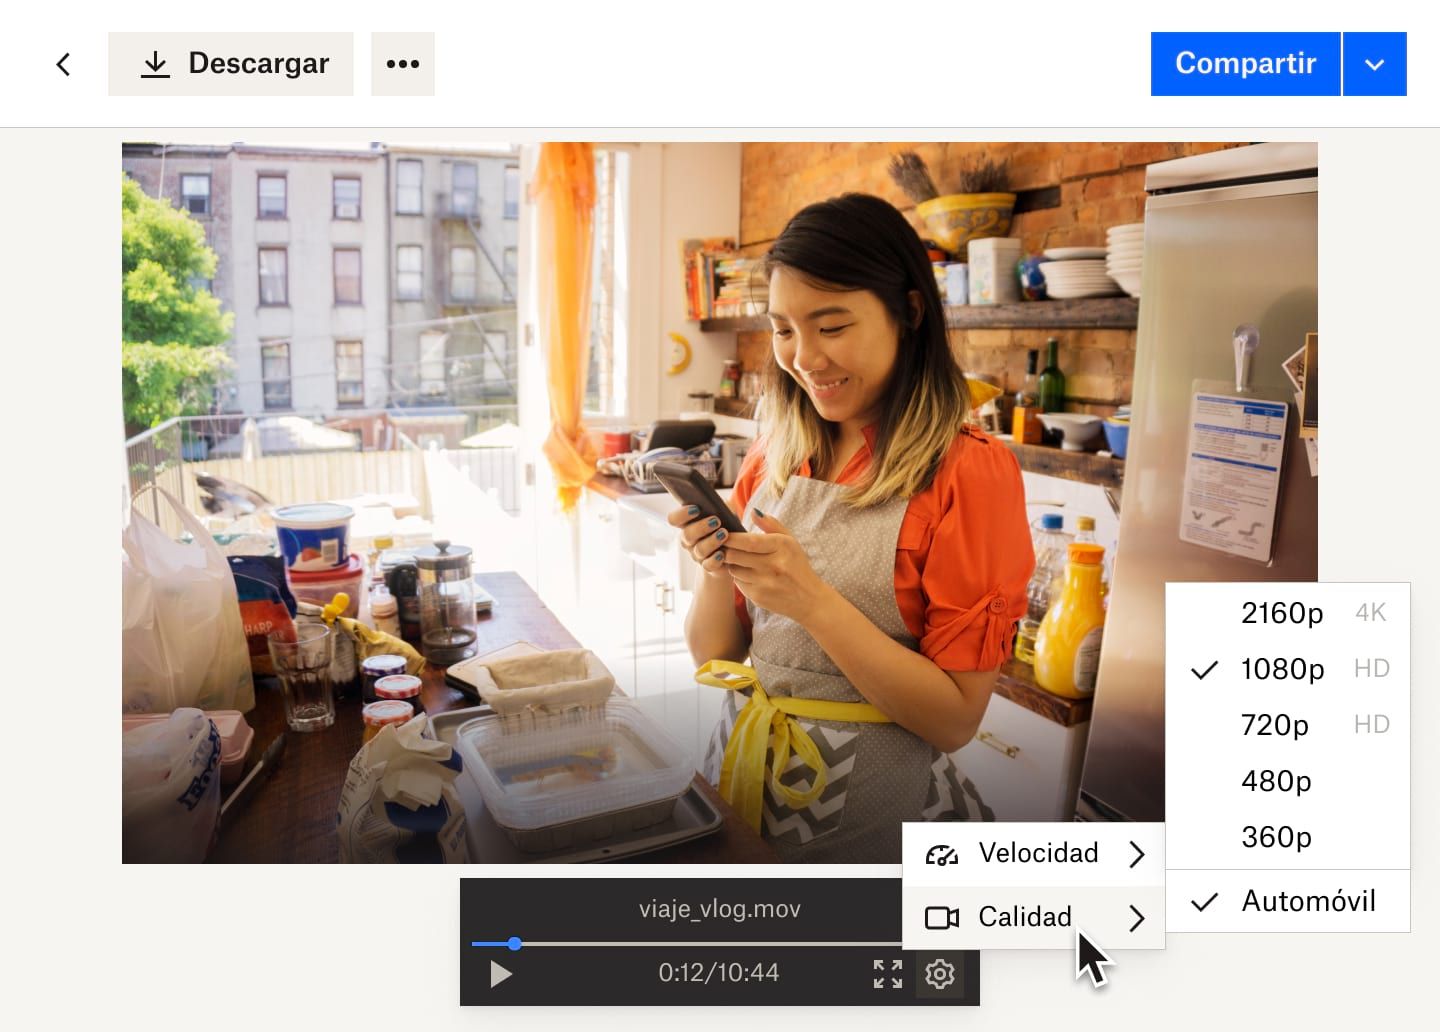 En un menú desplegable del apartado de Configuración, aparecen las opciones de velocidad y calidad de la imagen en un archivo de vídeo de Dropbox en el que sale una mujer trabajando en una panadería.